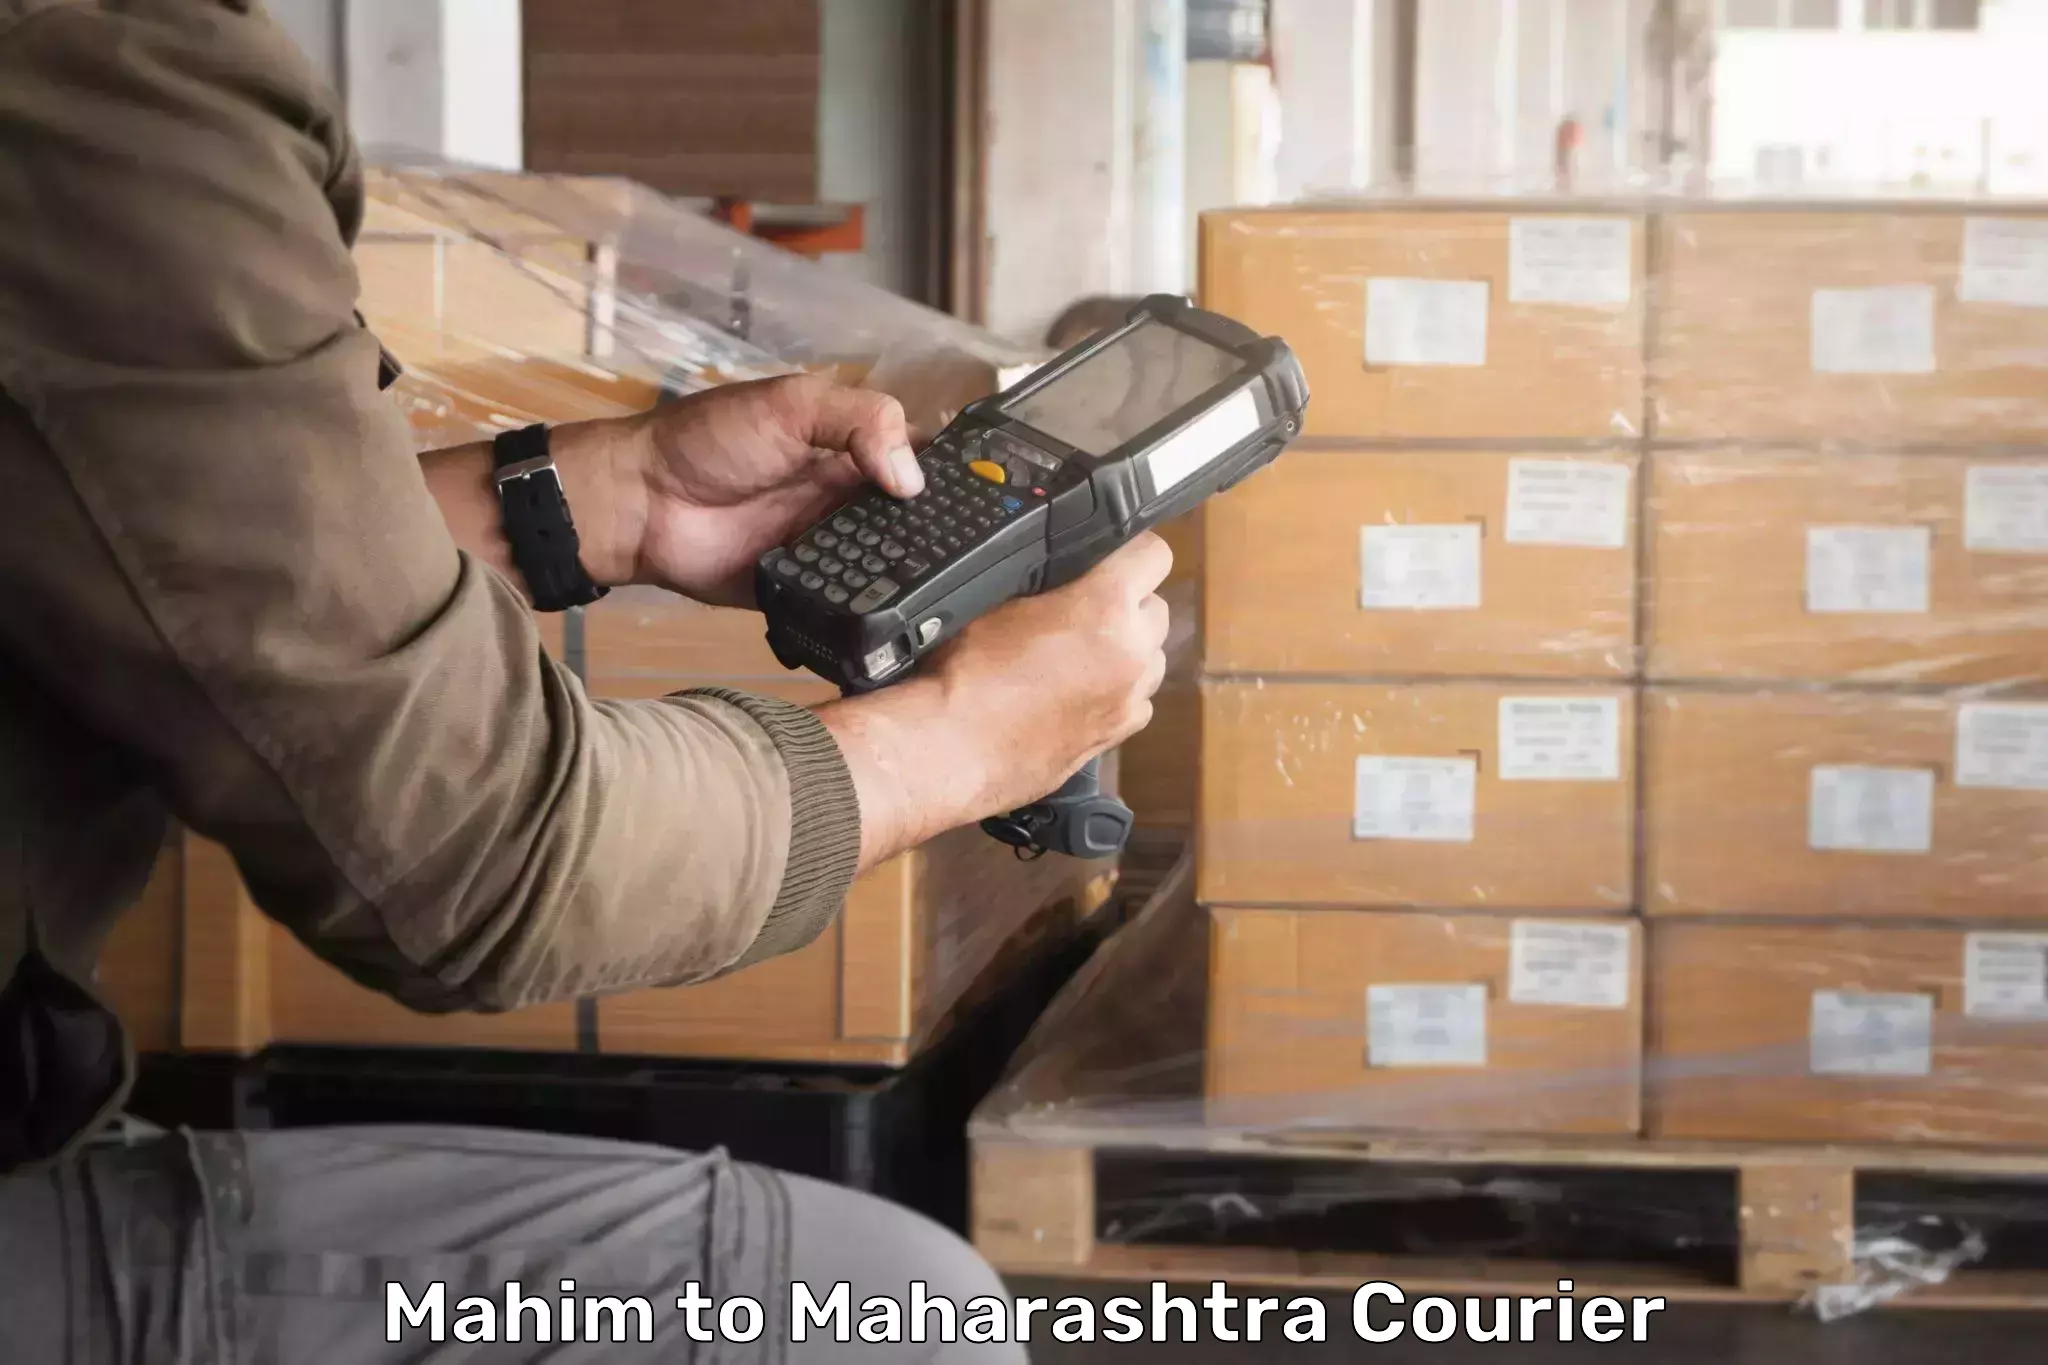 24/7 shipping services Mahim to Maharashtra